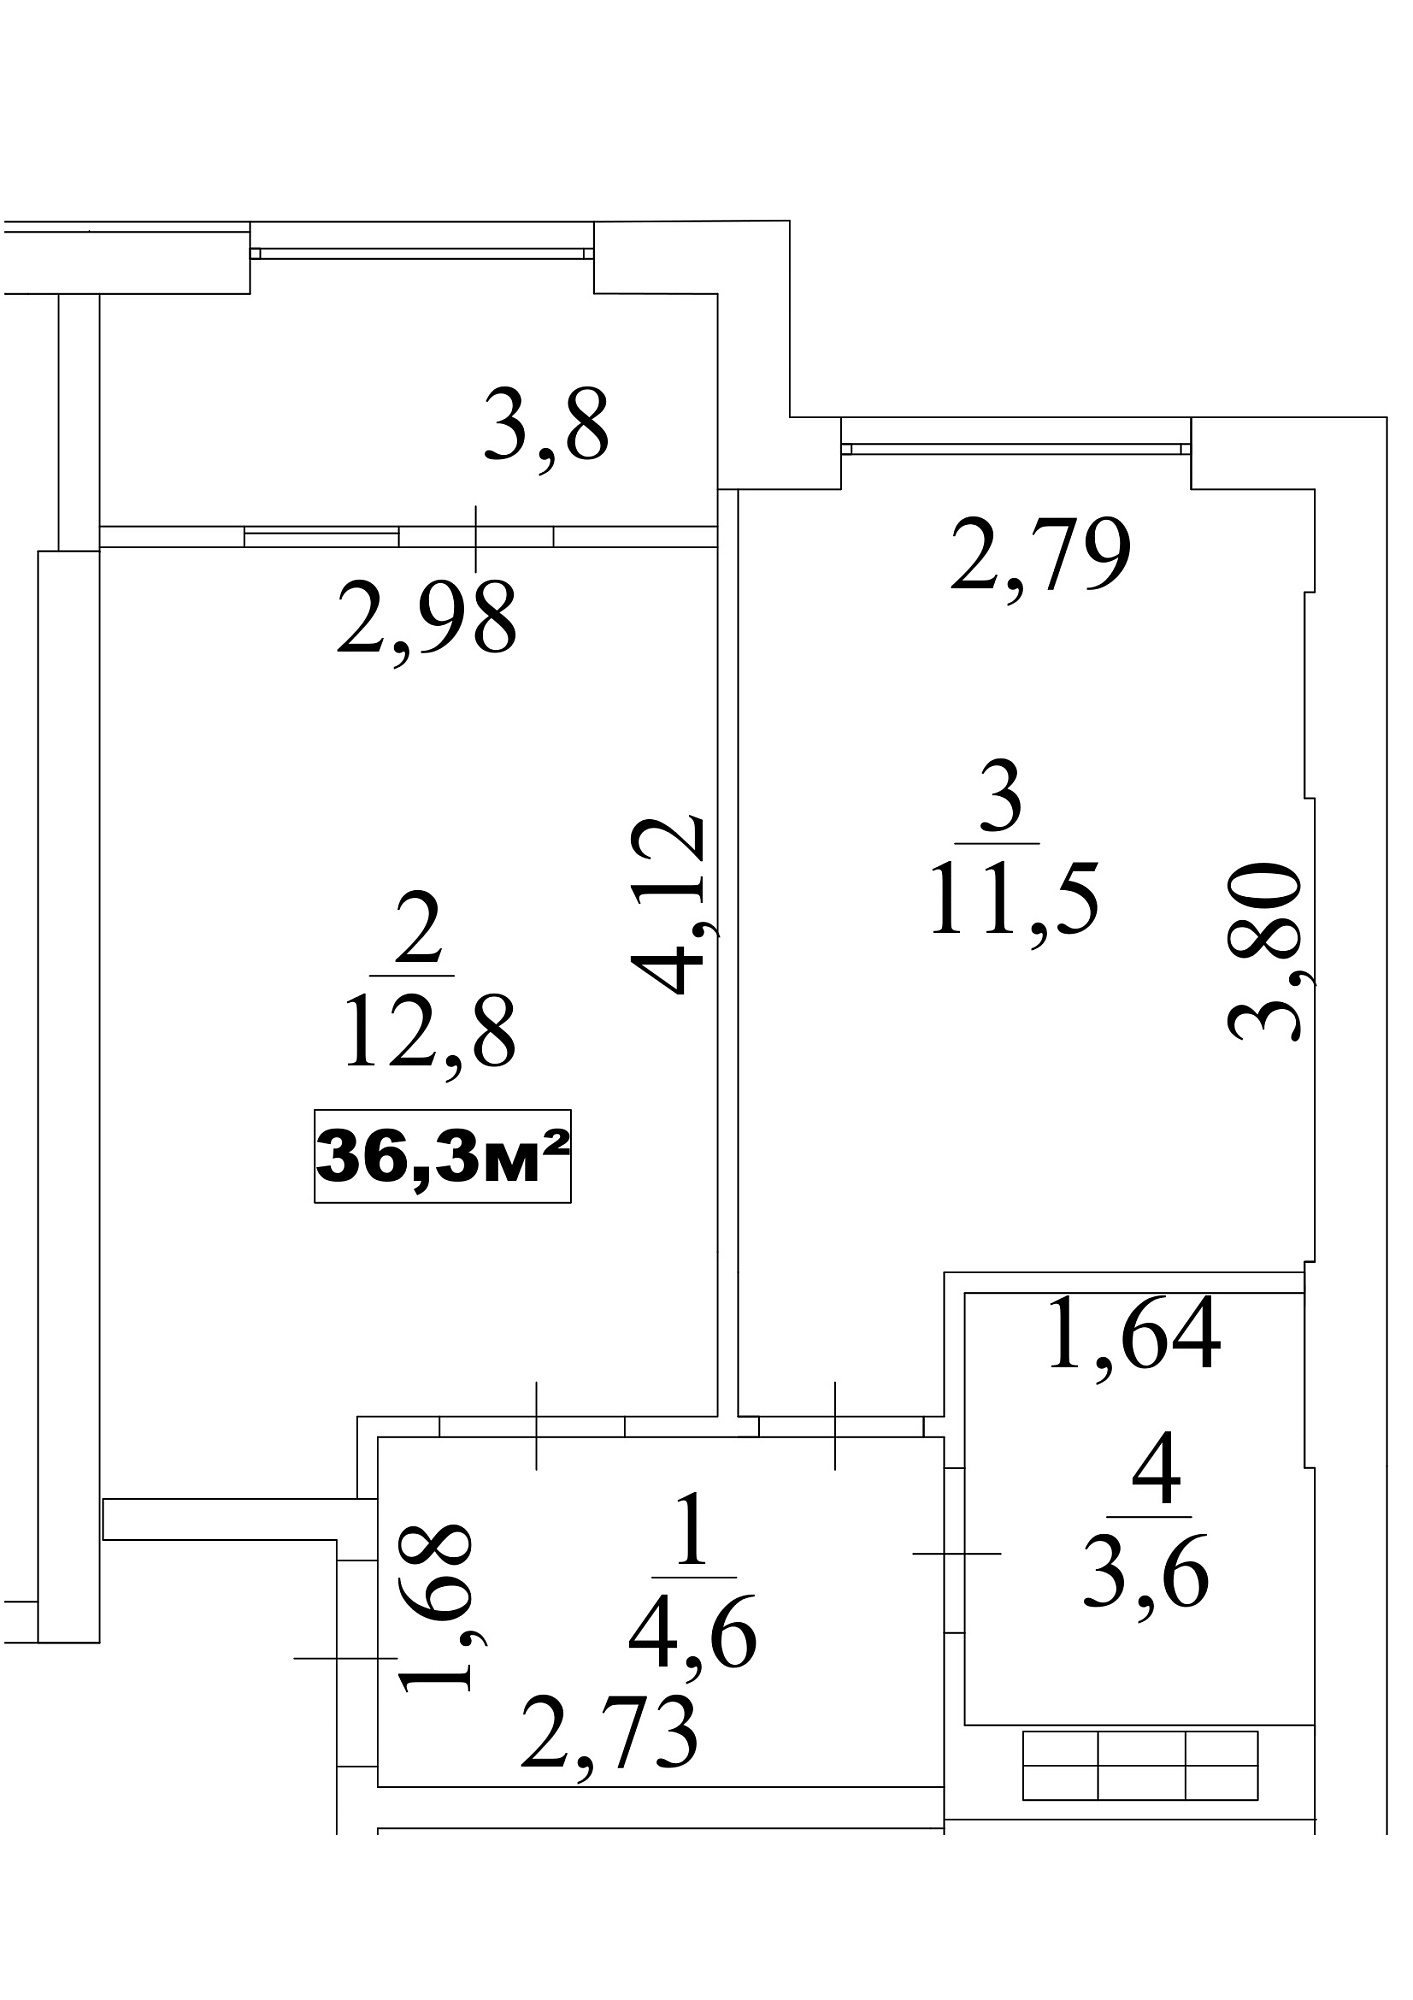 Планування 1-к квартира площею 36.3м2, AB-10-06/0052б.